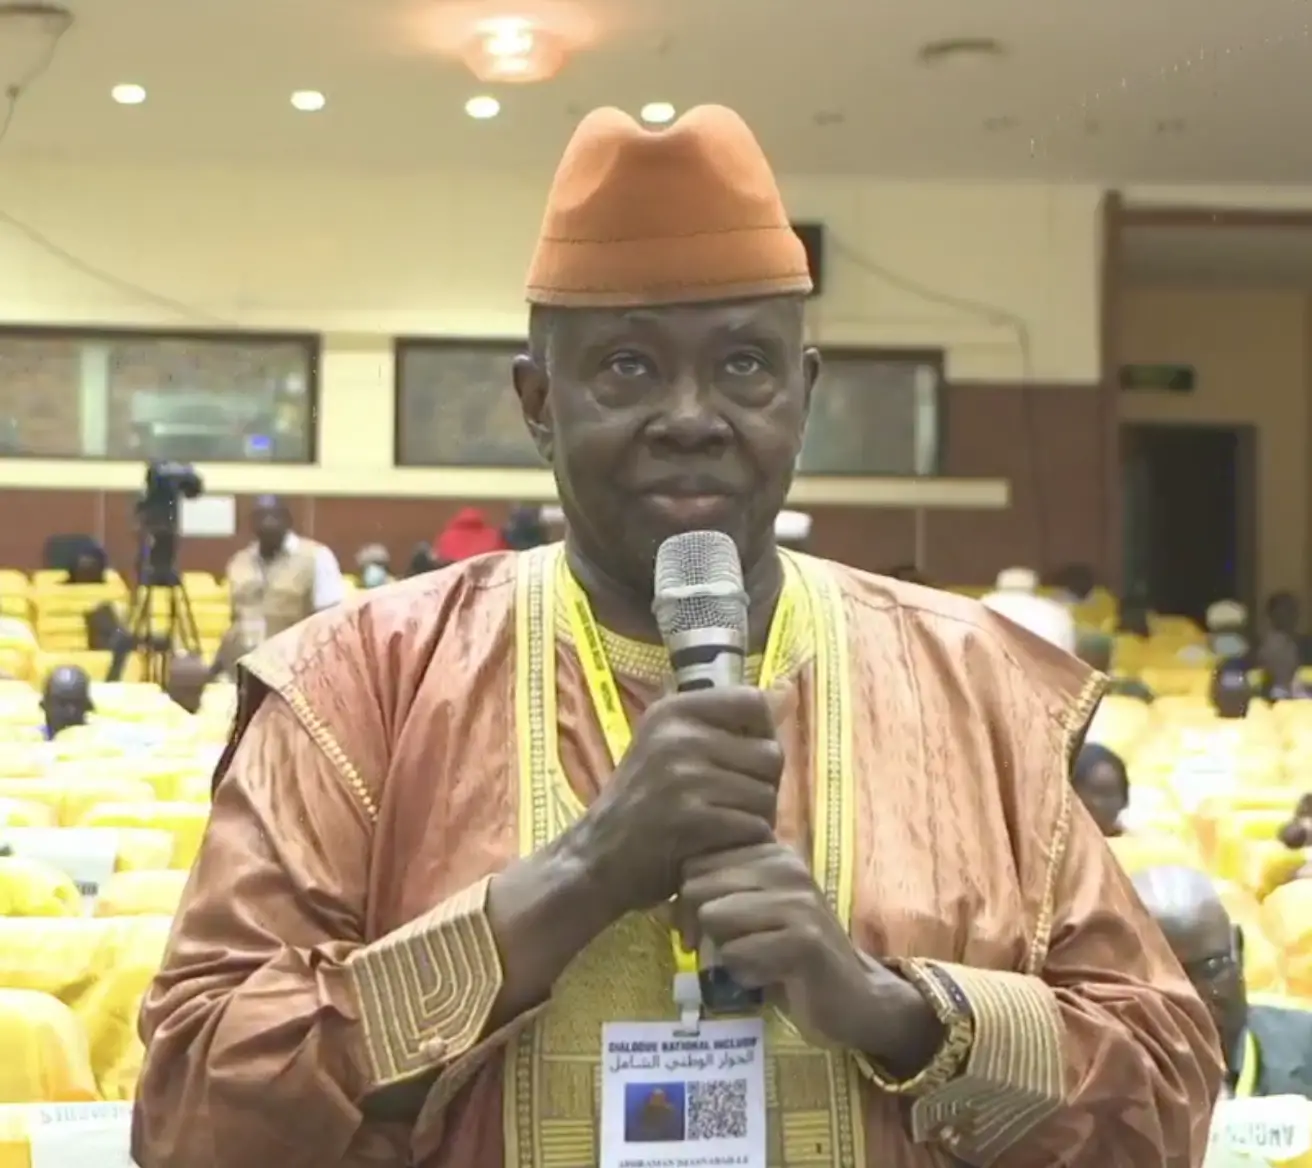 Tchad : Abderaman Djasnabaille souhaite la révision des accords de coopération des années 60